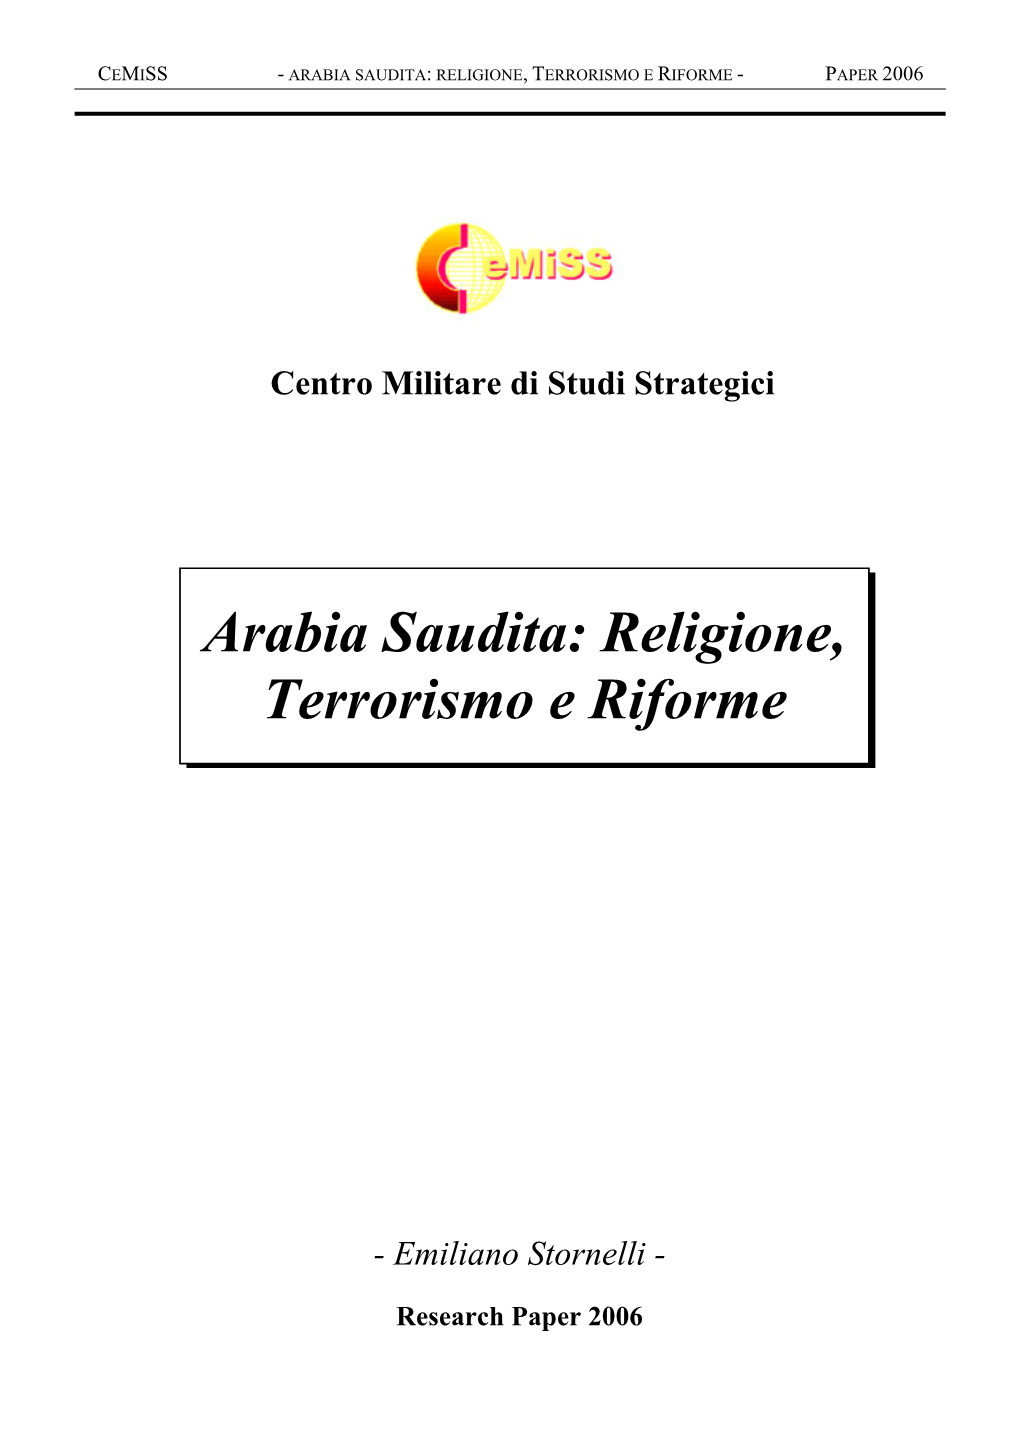 Arabia Saudita: Religione, Terrorismo E Riforme - Paper 2006